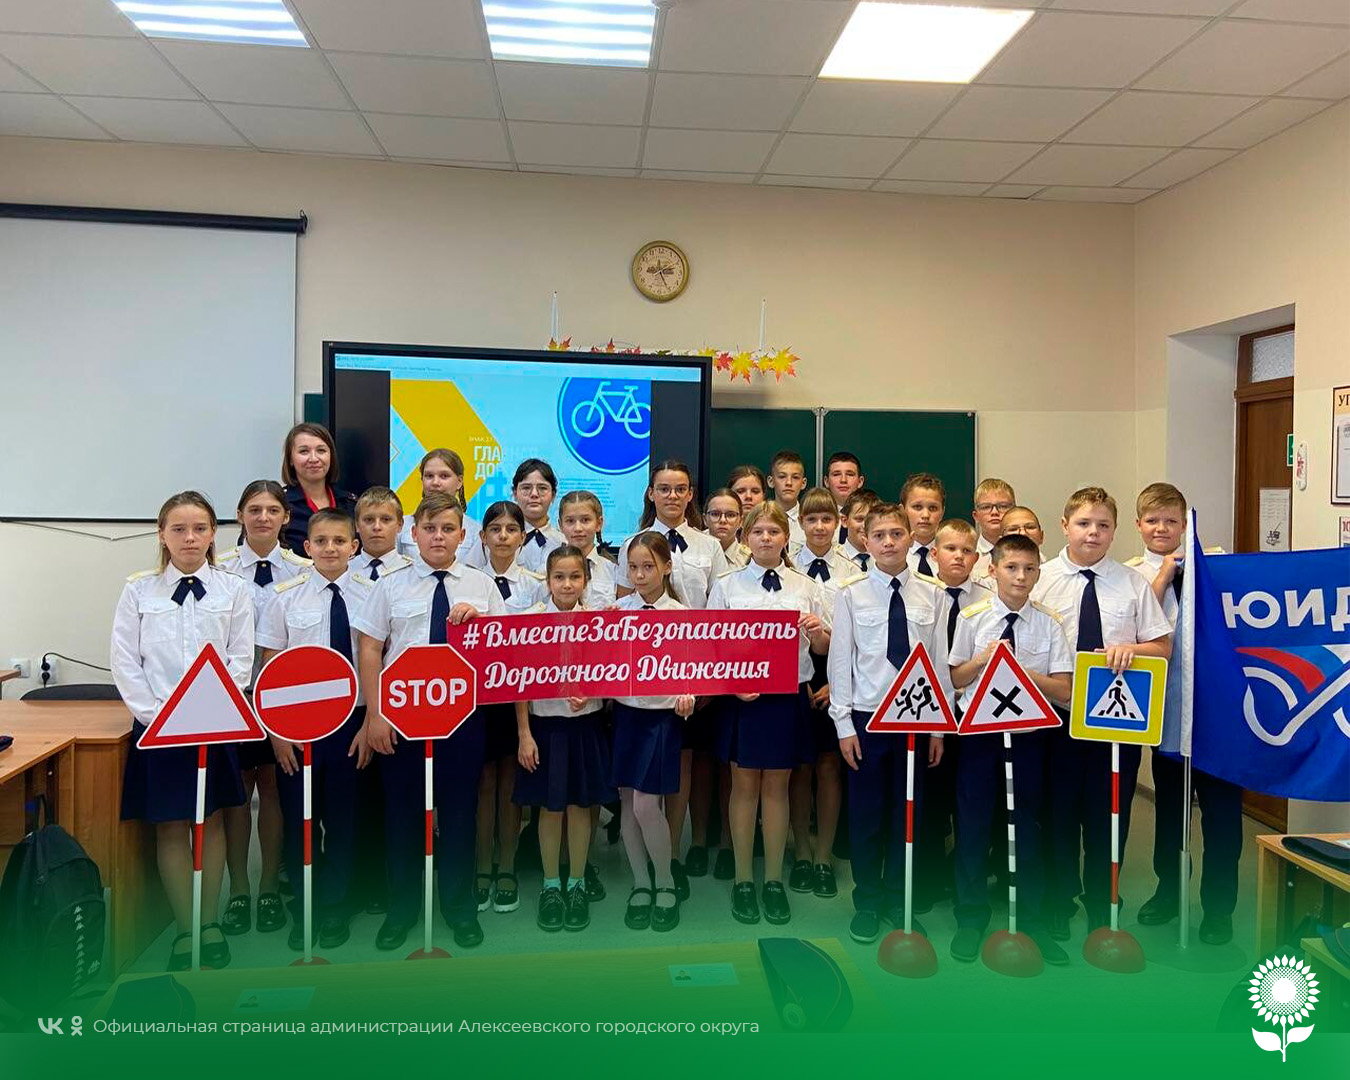 В Алексеевском городском округе состоялось торжественное мероприятие по случаю посвящения школьников в кадеты.